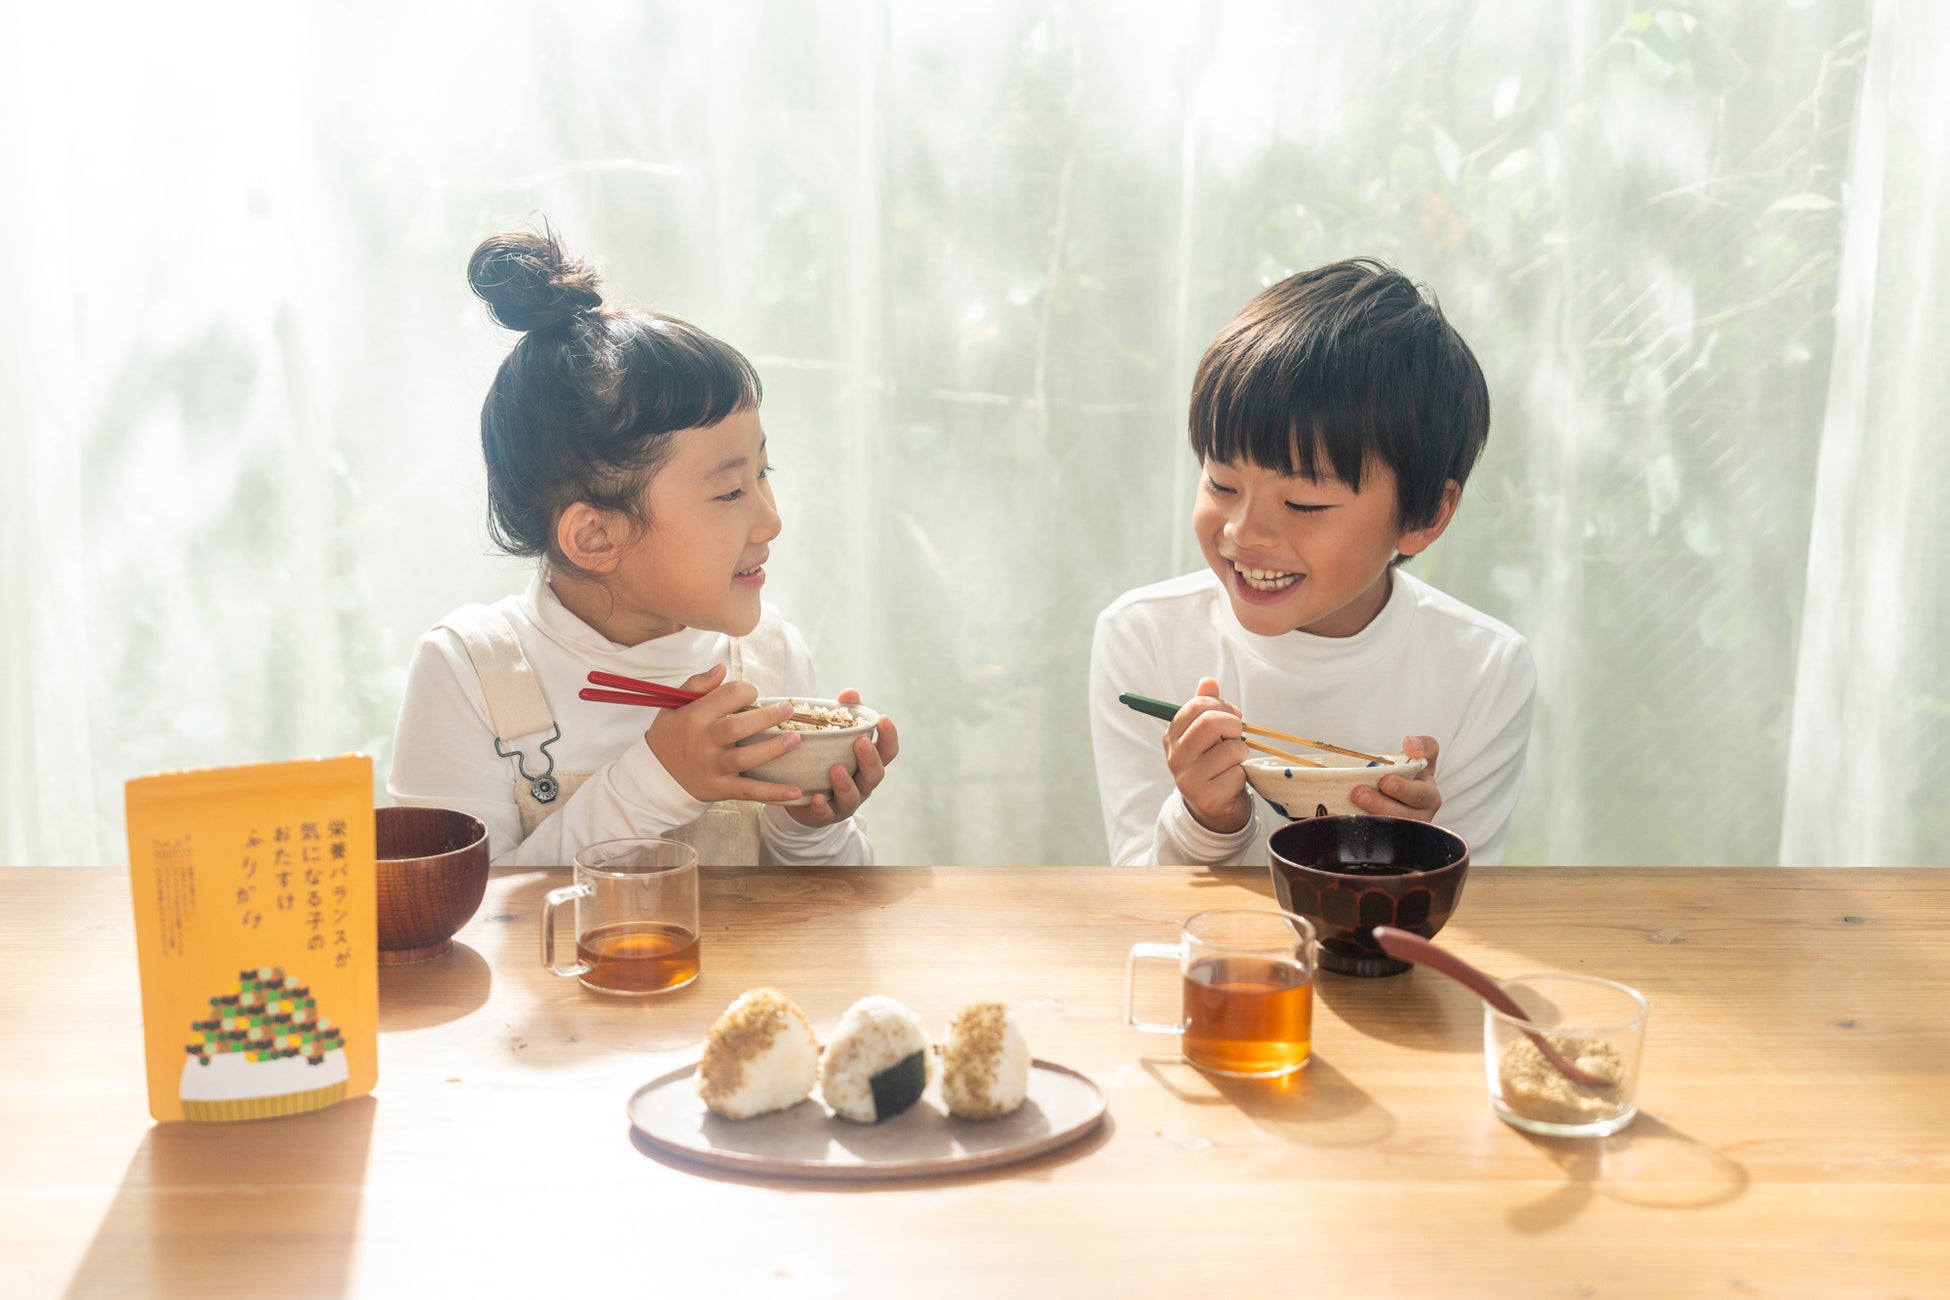 子どもの健康食品ブランドYOKAYO 新商品「「毎日の調子を整えるおたすけふりかけ」を発売